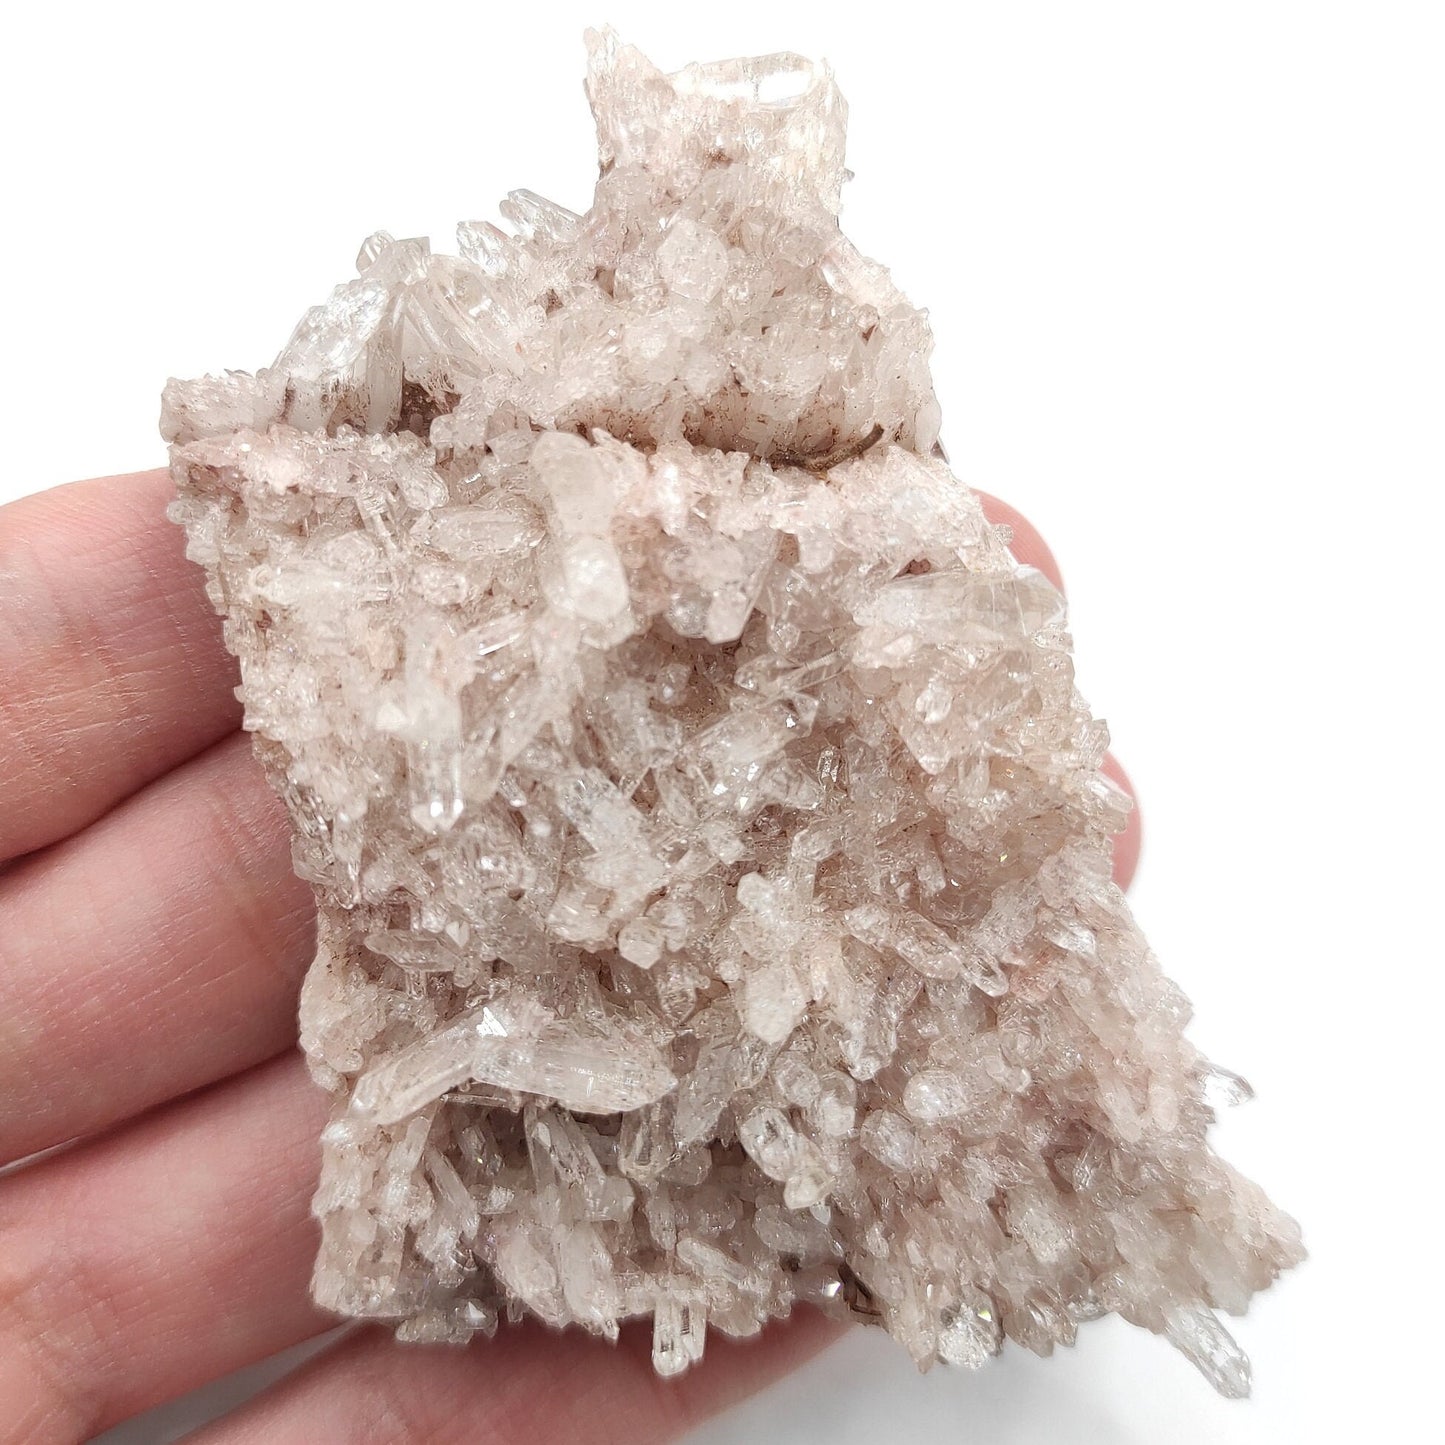 76g Natural Pink Lithium Coated Quartz Crystal - Bolivar, Santander, Colombia - Pink Quartz Cluster - Crystallized Quartz Mineral Specimen